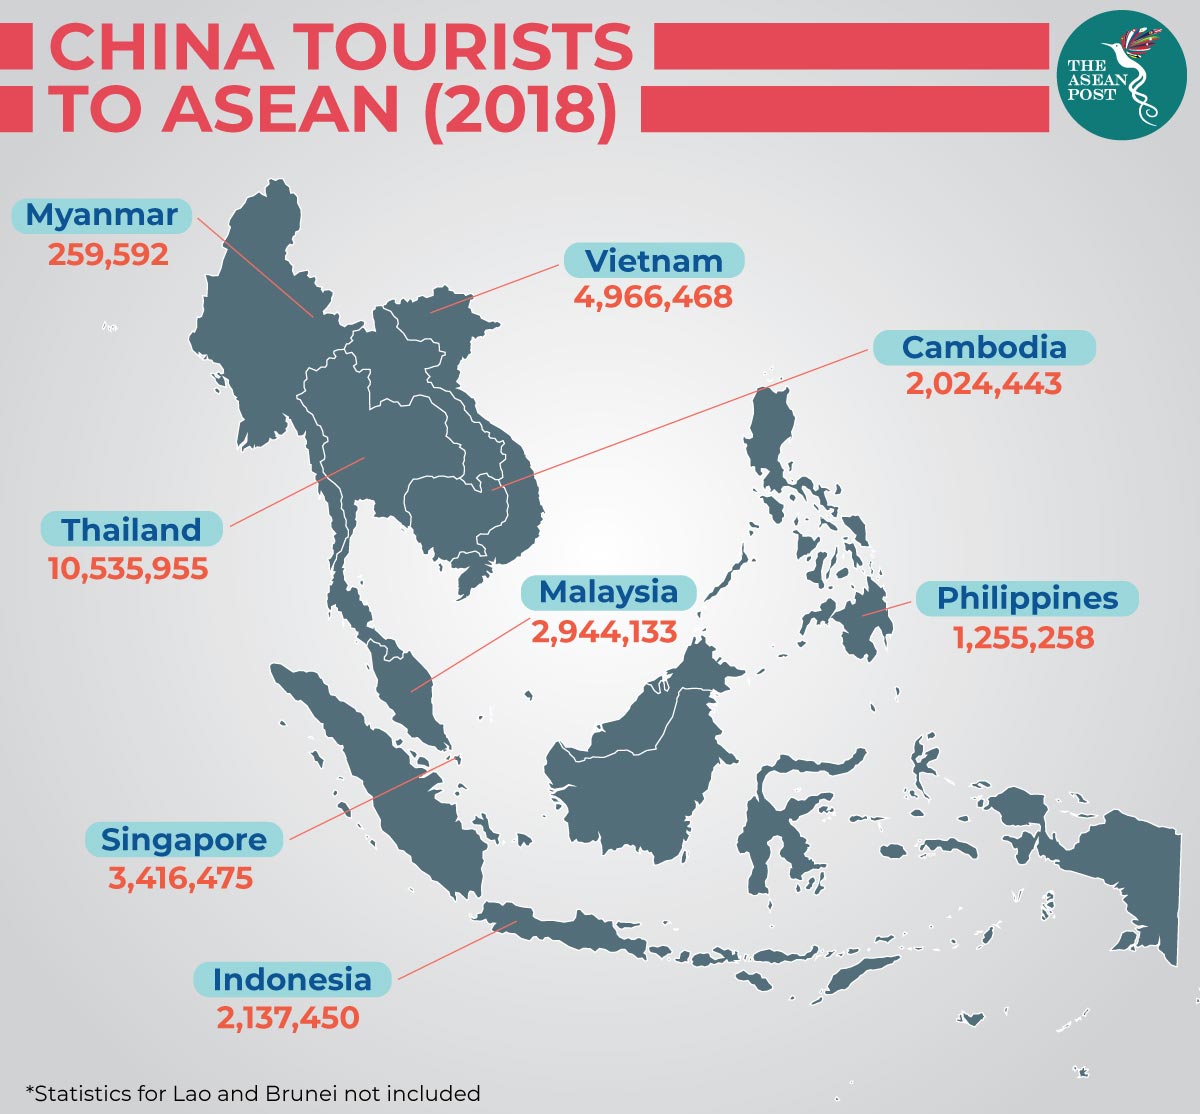 CHINA-TOURIST-TO-ASEAN-2018 